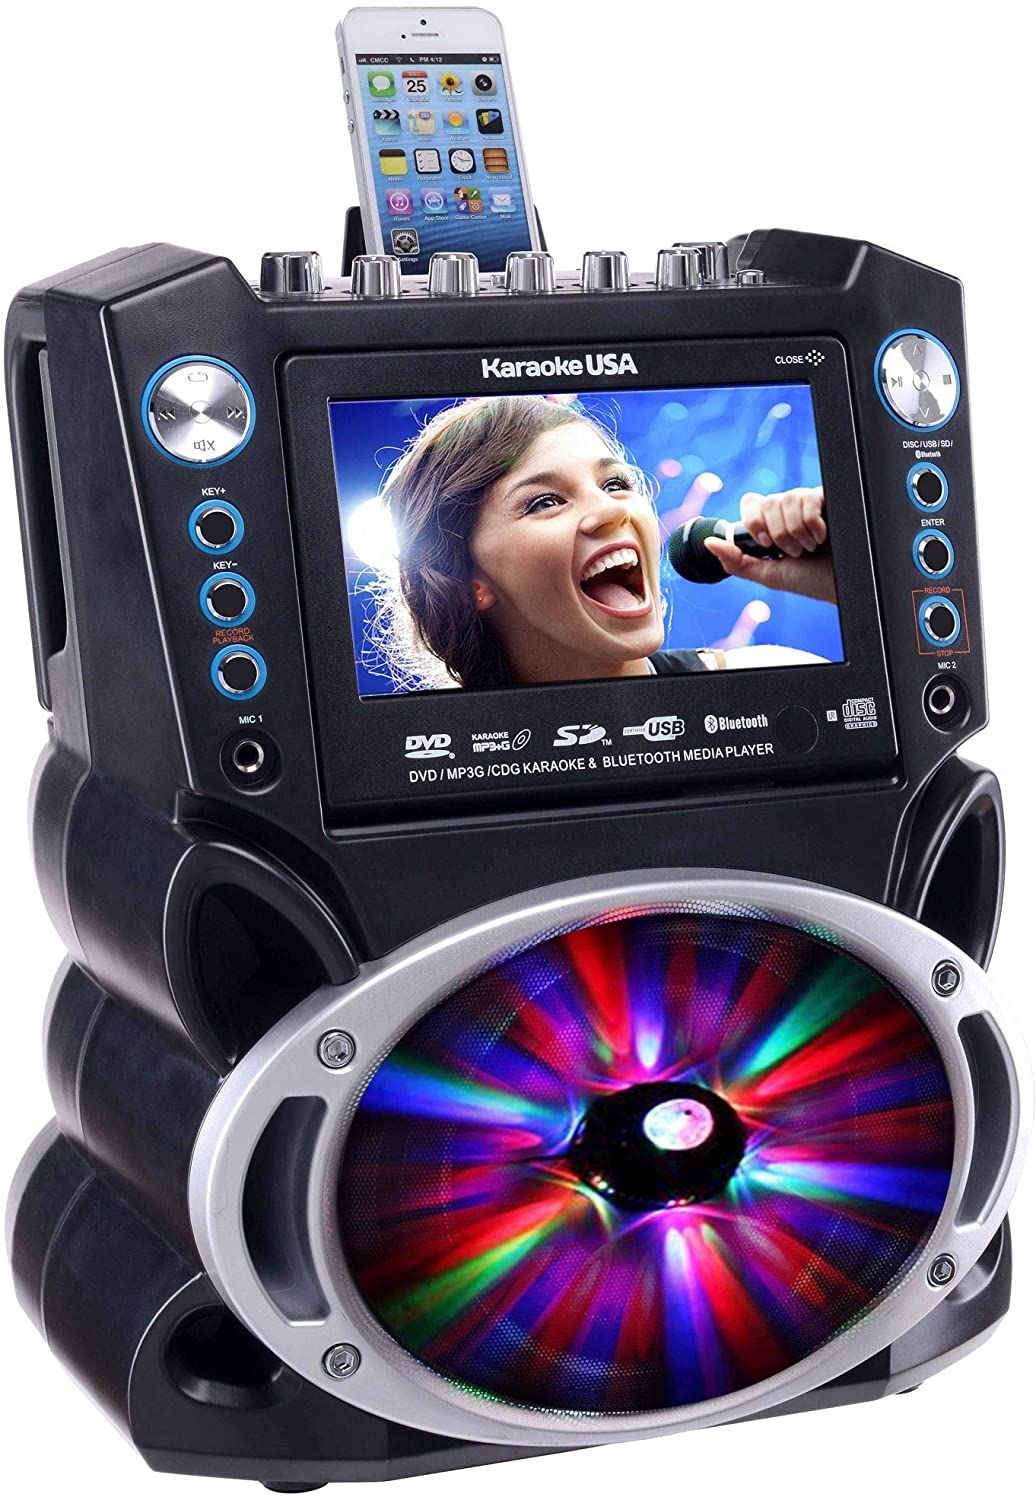 Karaoke USA GF842 DVDCDGMP3G Karaoke Machine b